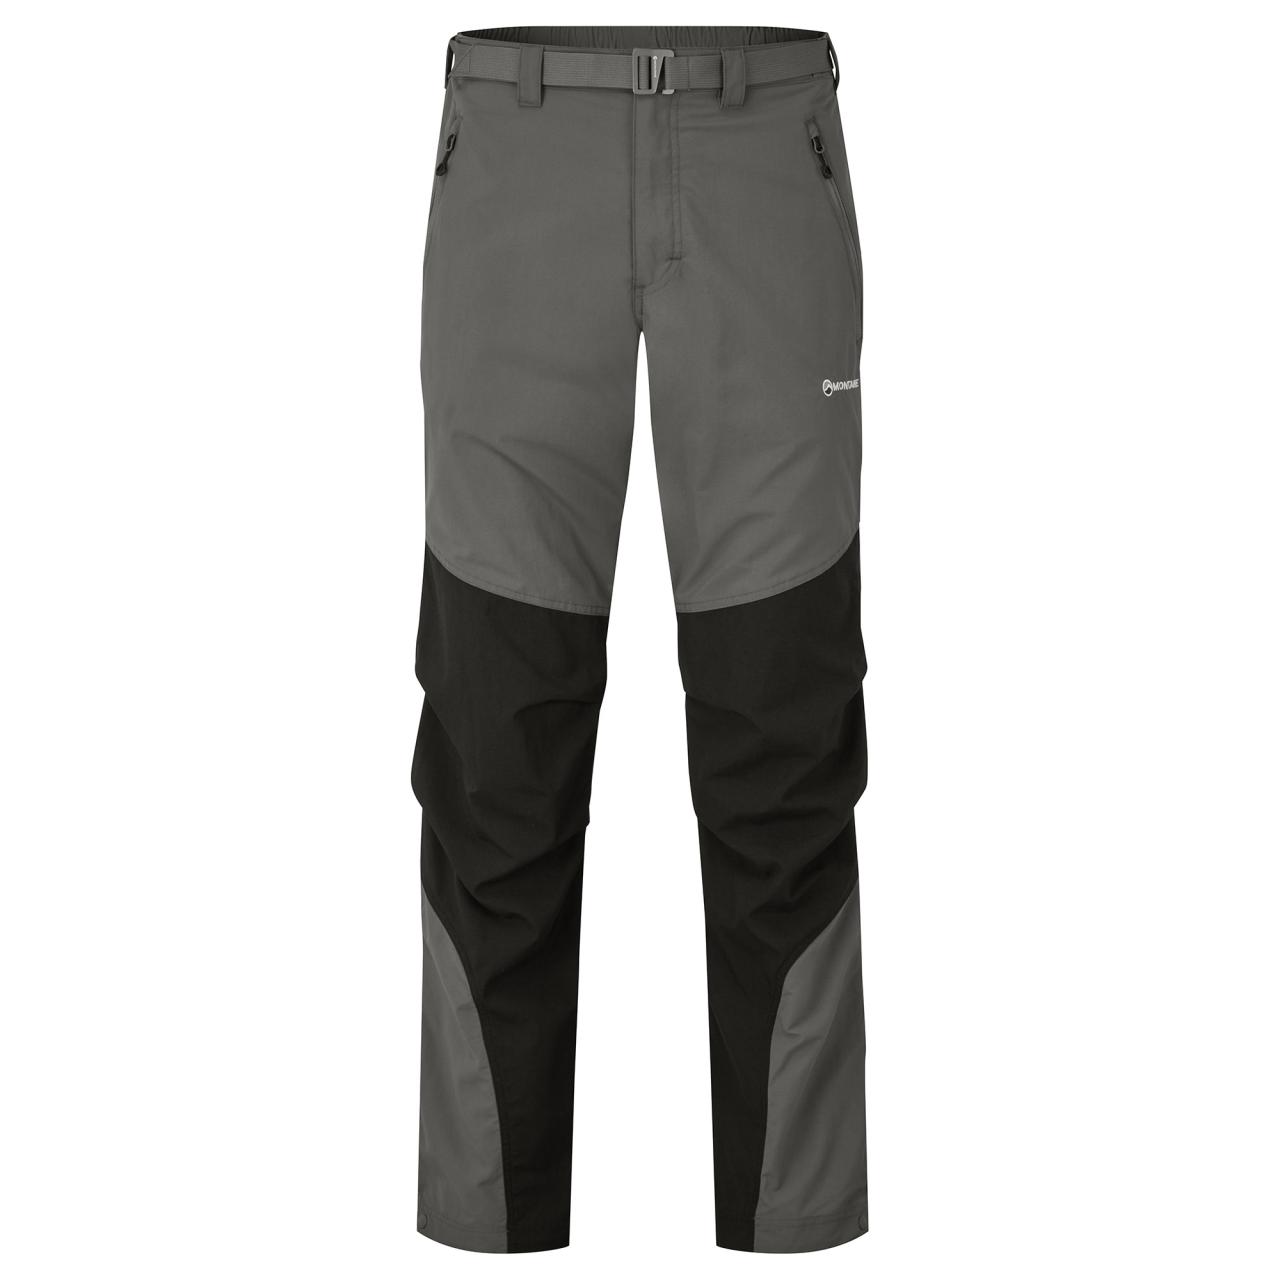 TERRA PANTS LONG LEG-GRAPHITE-38/XXL pánské kalhoty šedé